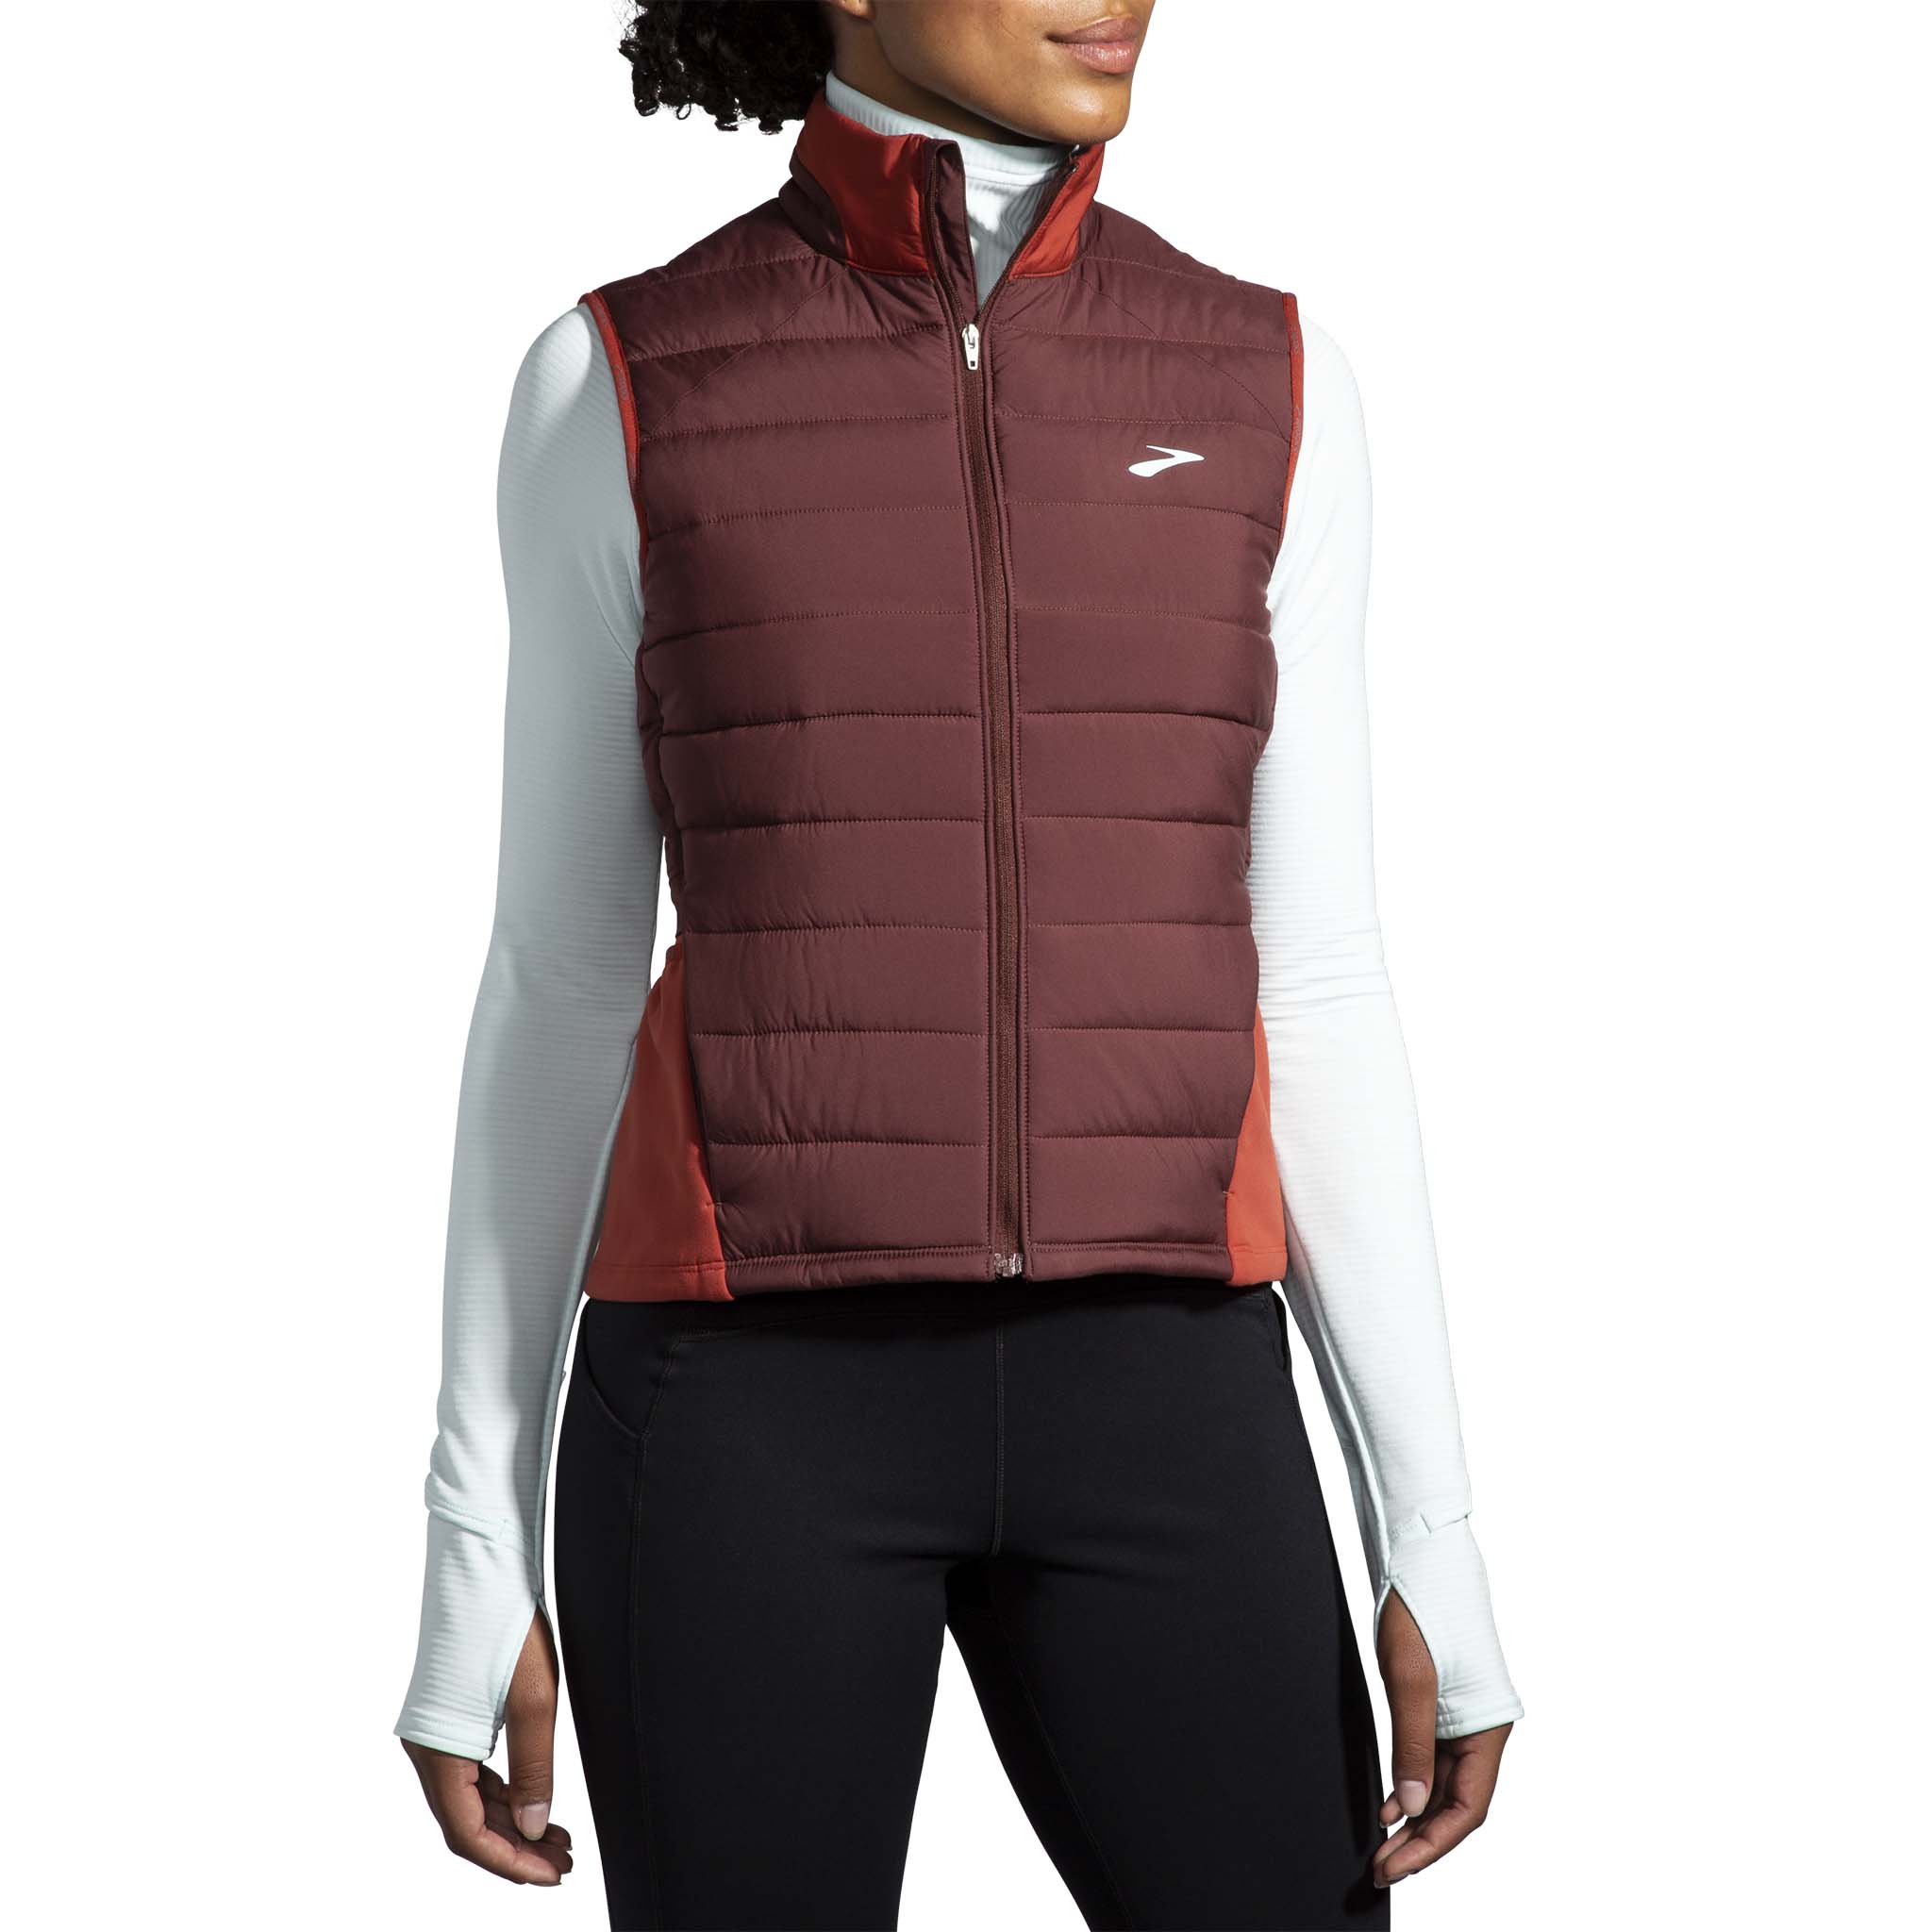 Brooks Shield Hybrid 2.0 sleeveless running vest for women